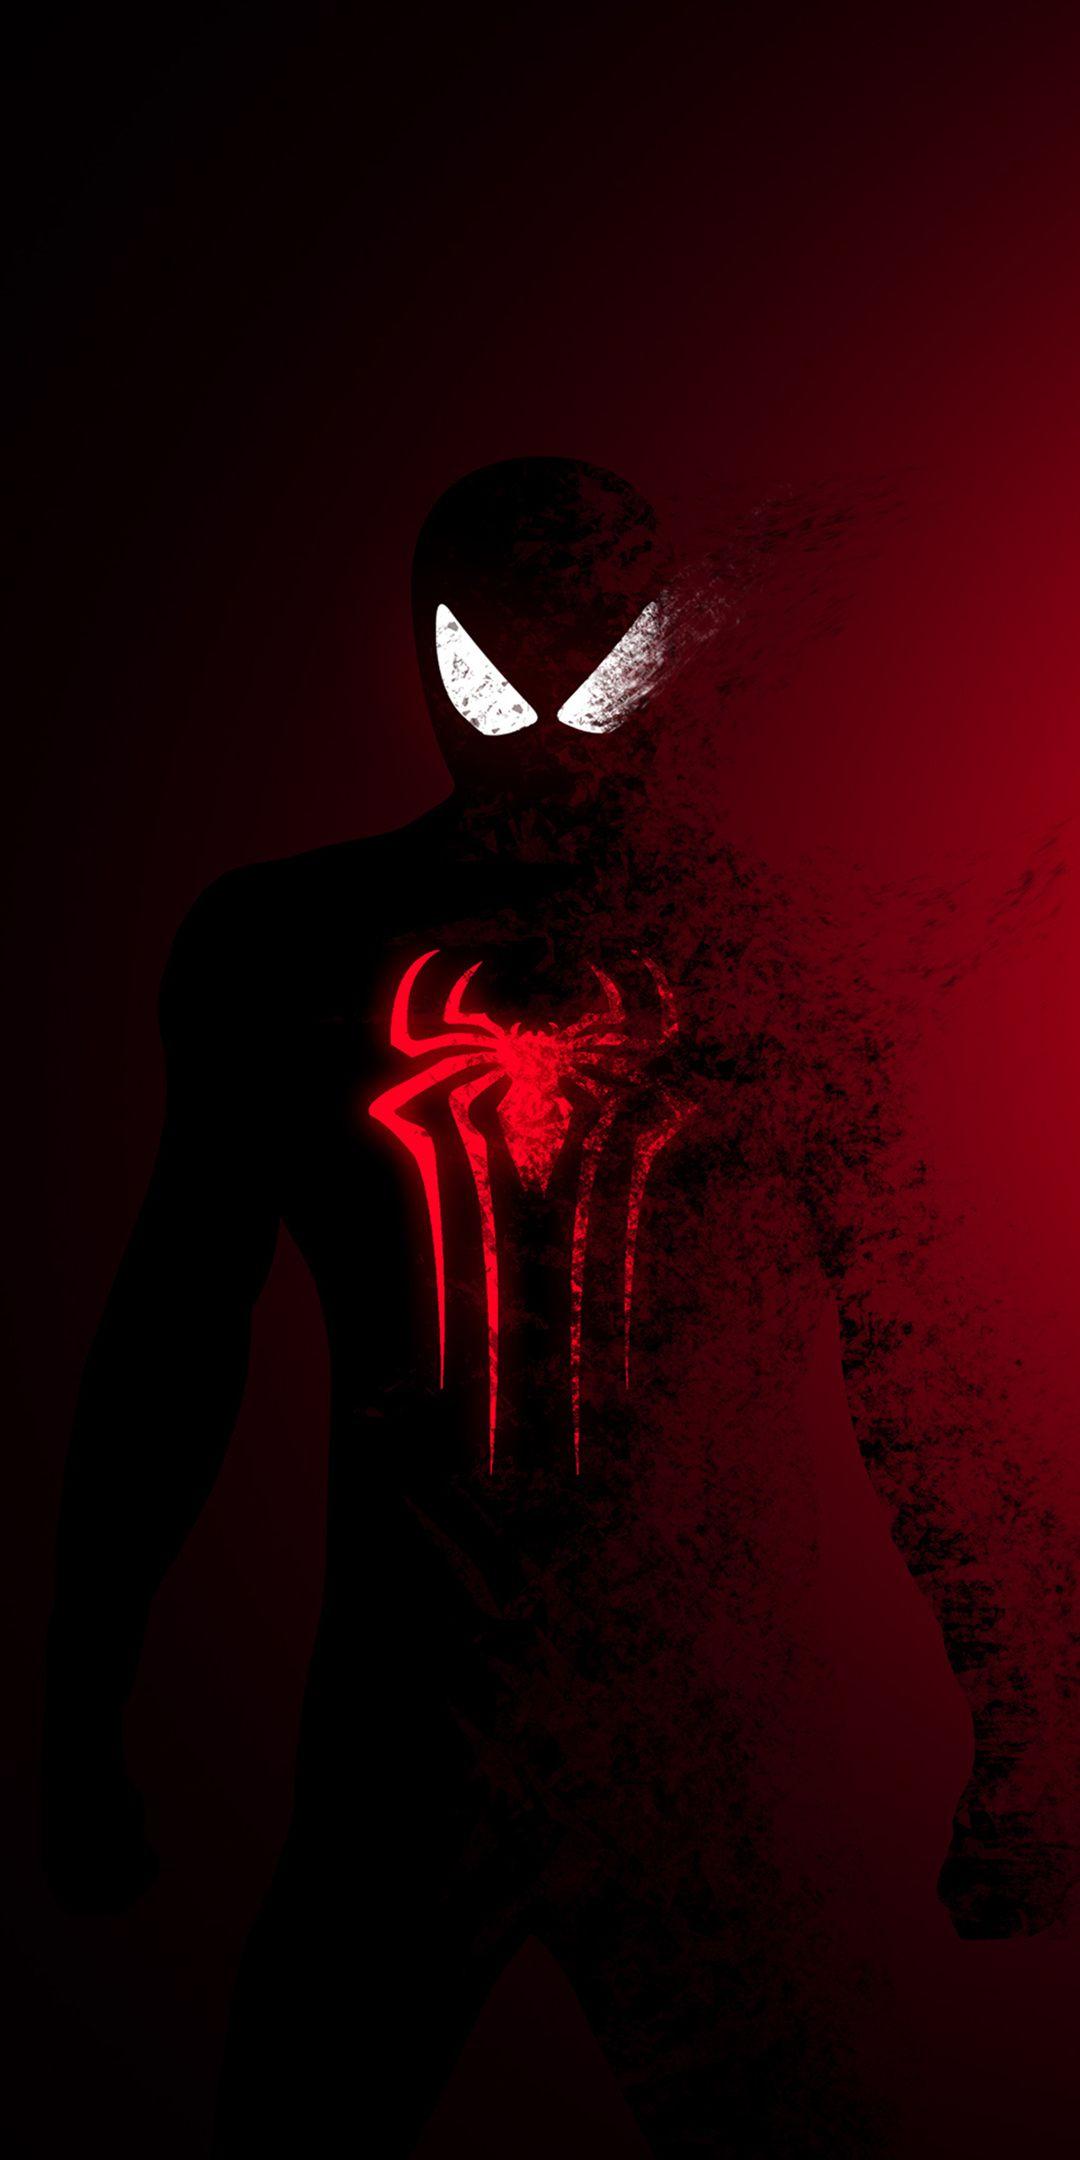 Spider Man, Spider Man: Far From Home, Dark Red, Fade Effect, Art Wallpaper. Spiderman Art, Marvel, Superhero Wallpaper